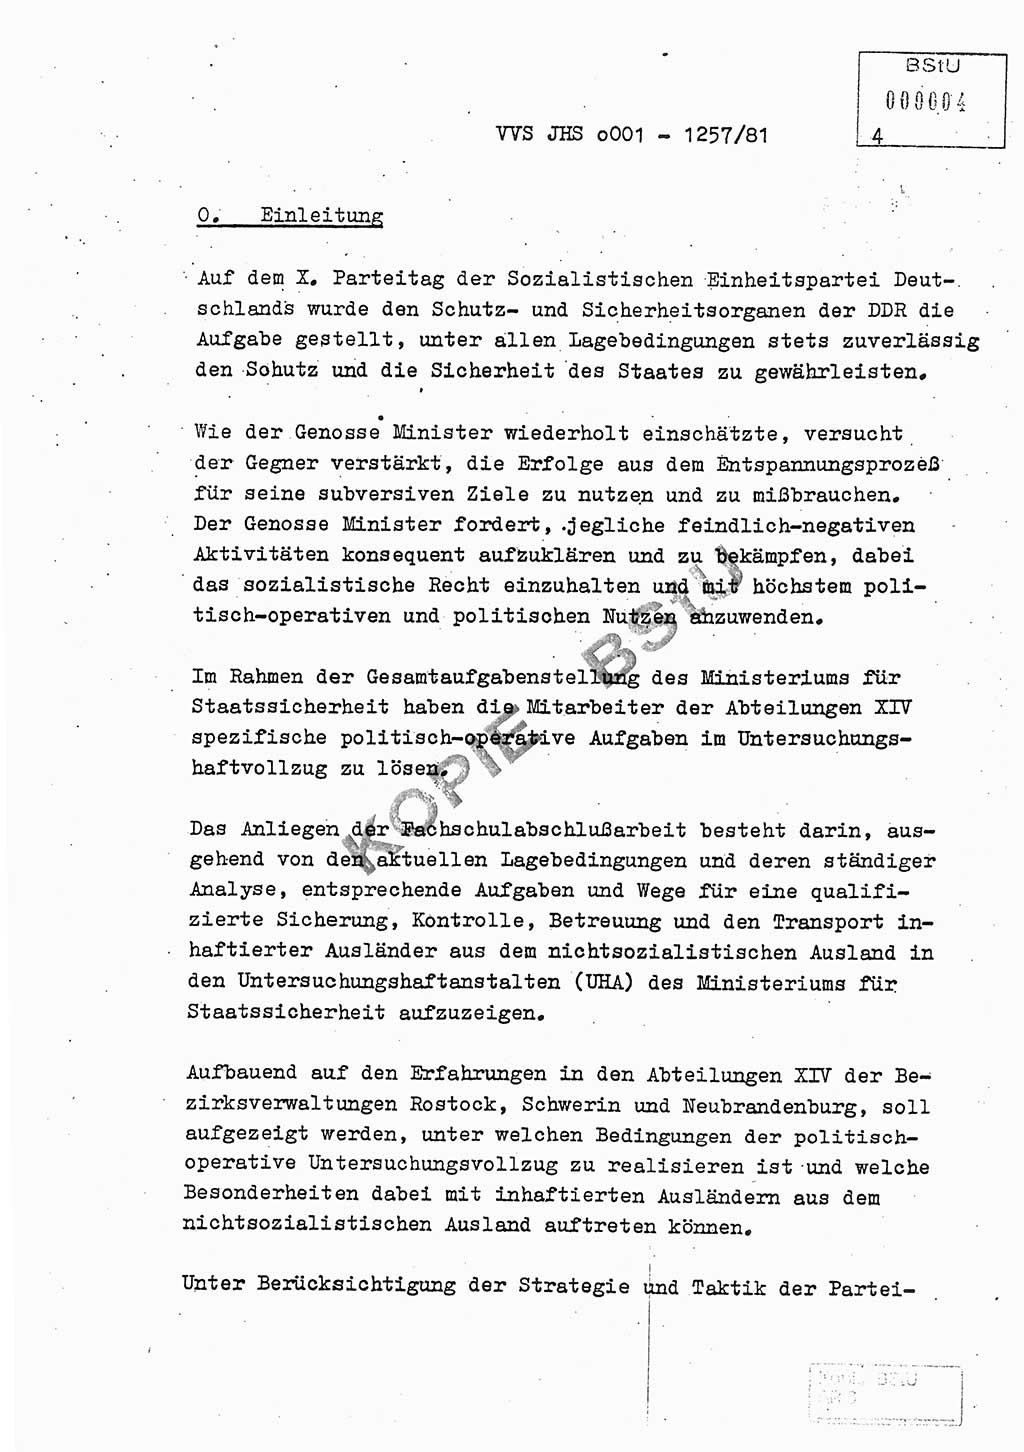 Fachschulabschlußarbeit Unterleutnant Dieter Möller (BV Rst. Abt. ⅩⅣ), Ministerium für Staatssicherheit (MfS) [Deutsche Demokratische Republik (DDR)], Juristische Hochschule (JHS), Vertrauliche Verschlußsache (VVS) o001-1257/81, Potsdam 1982, Seite 4 (FS-Abschl.-Arb. MfS DDR JHS VVS o001-1257/81 1982, S. 4)